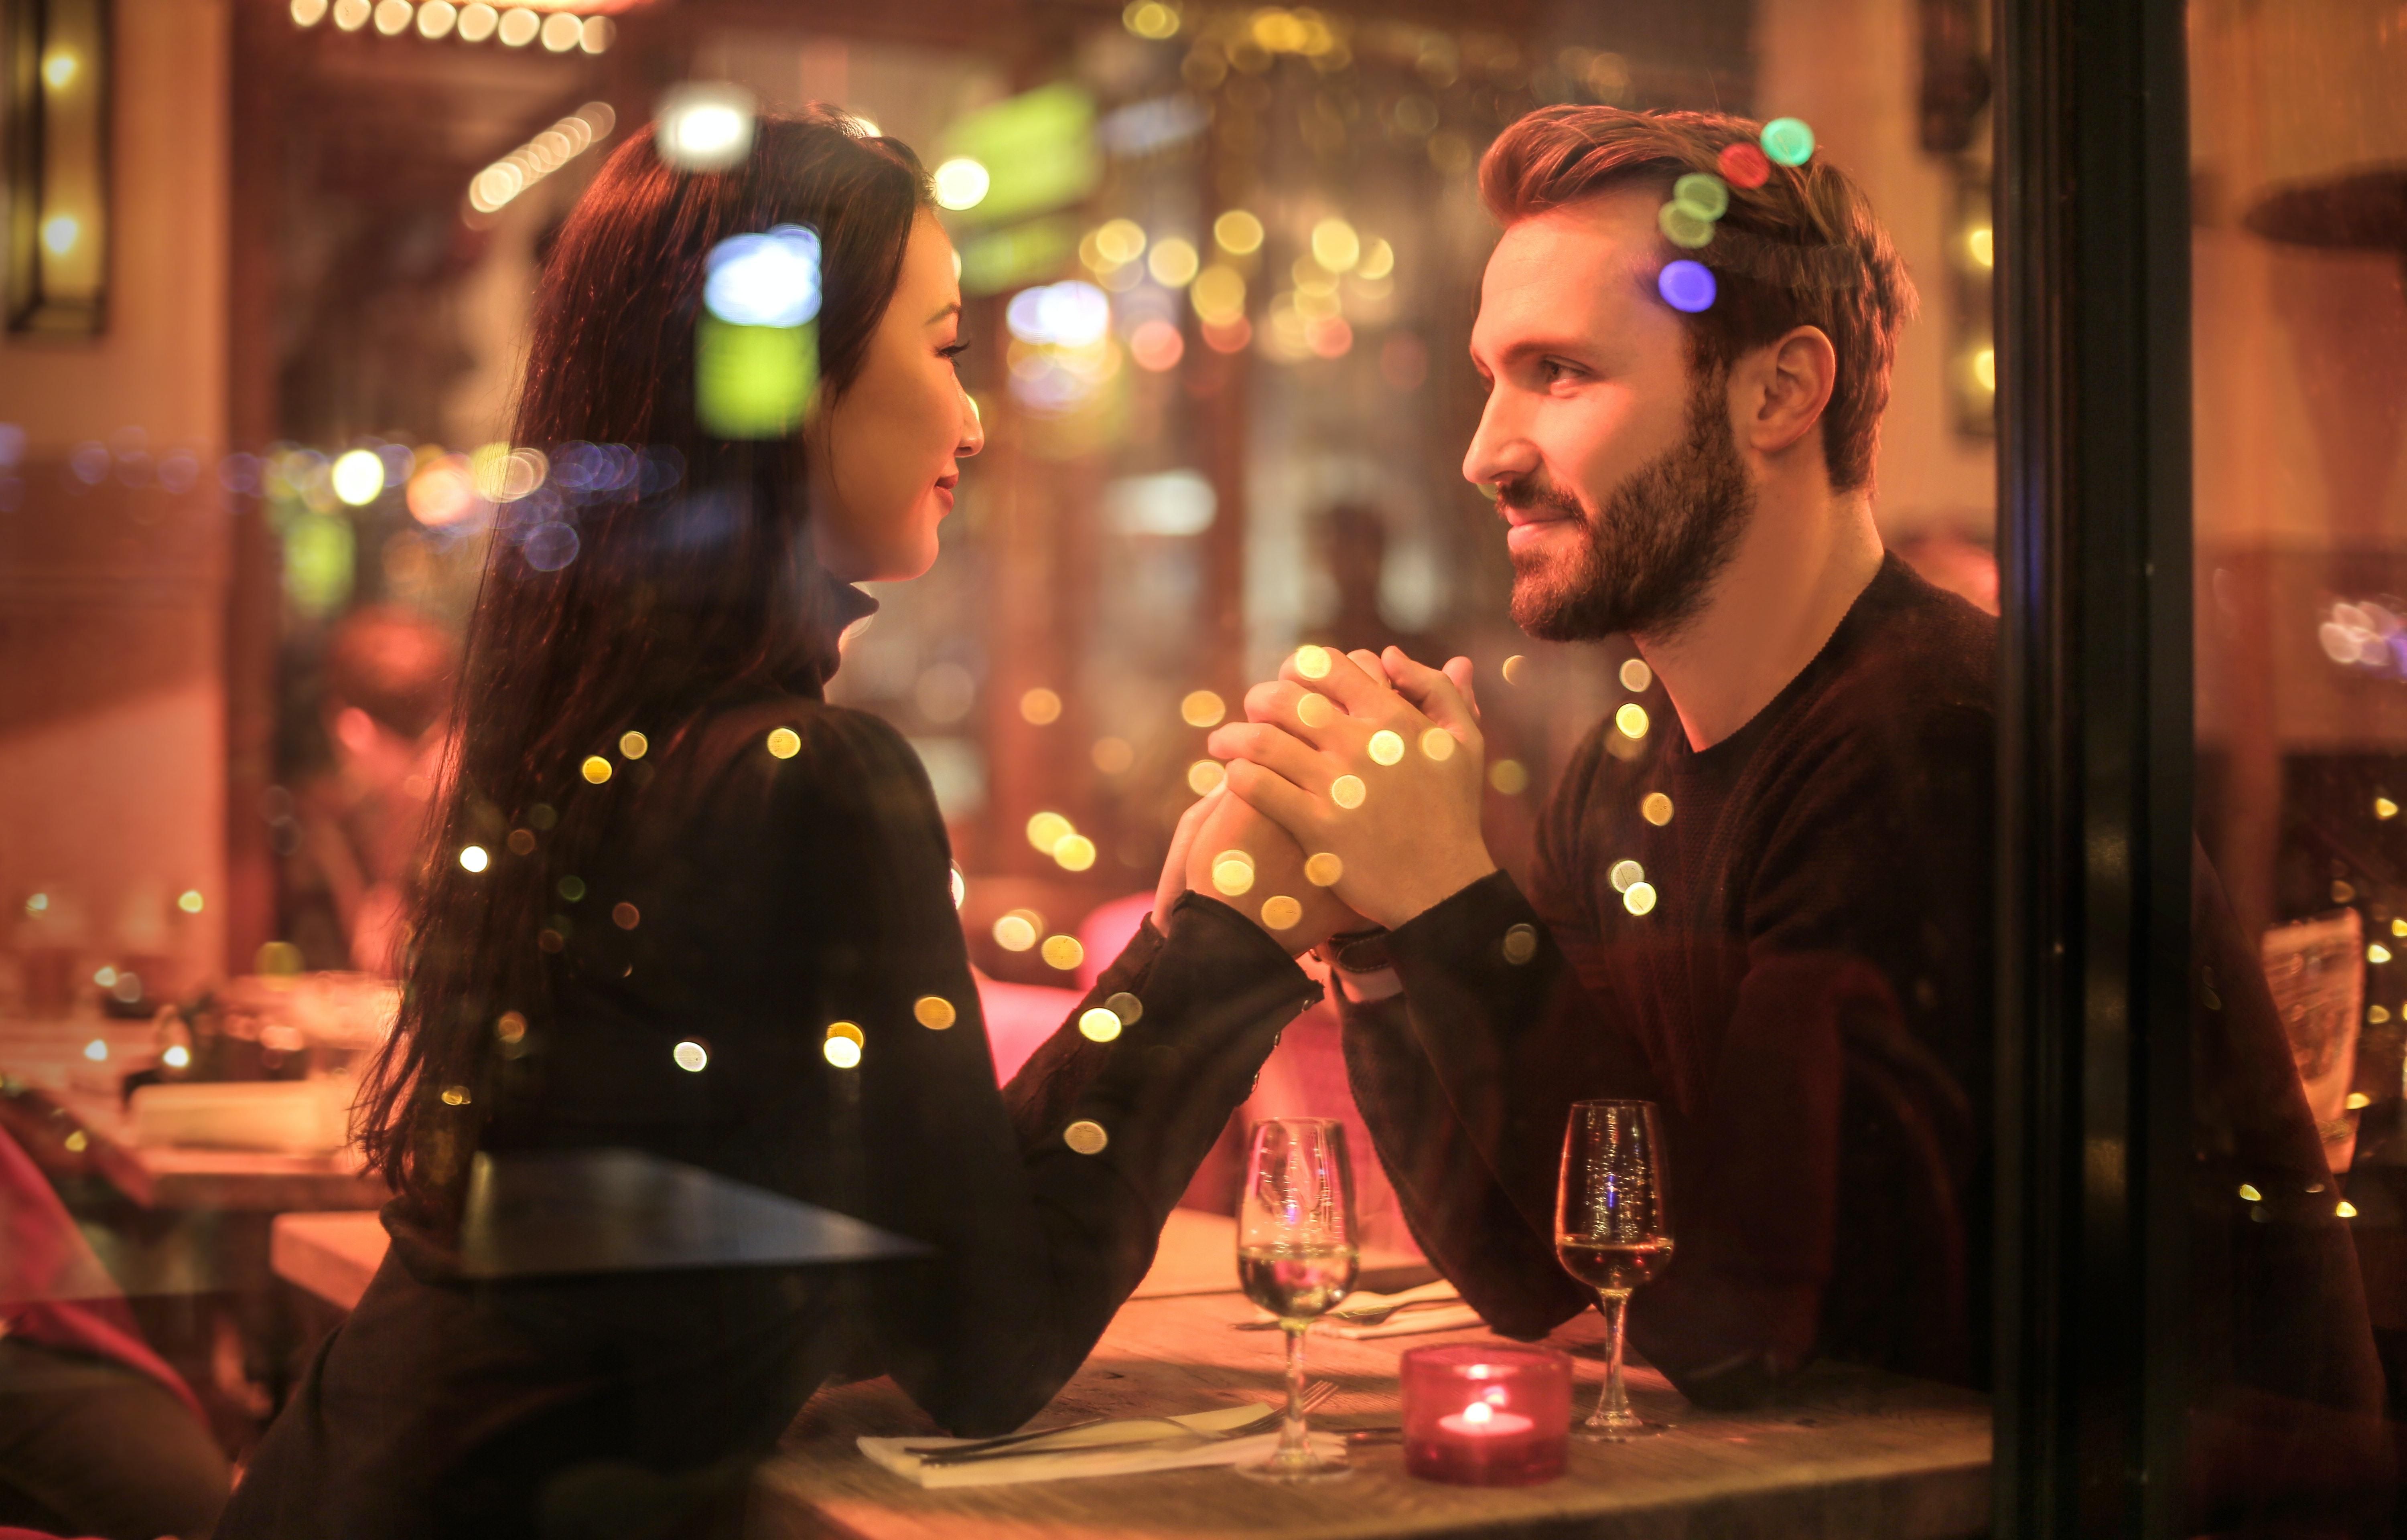 Від друзів до закоханих: дві третини романтичних стосунків починались з товаришування